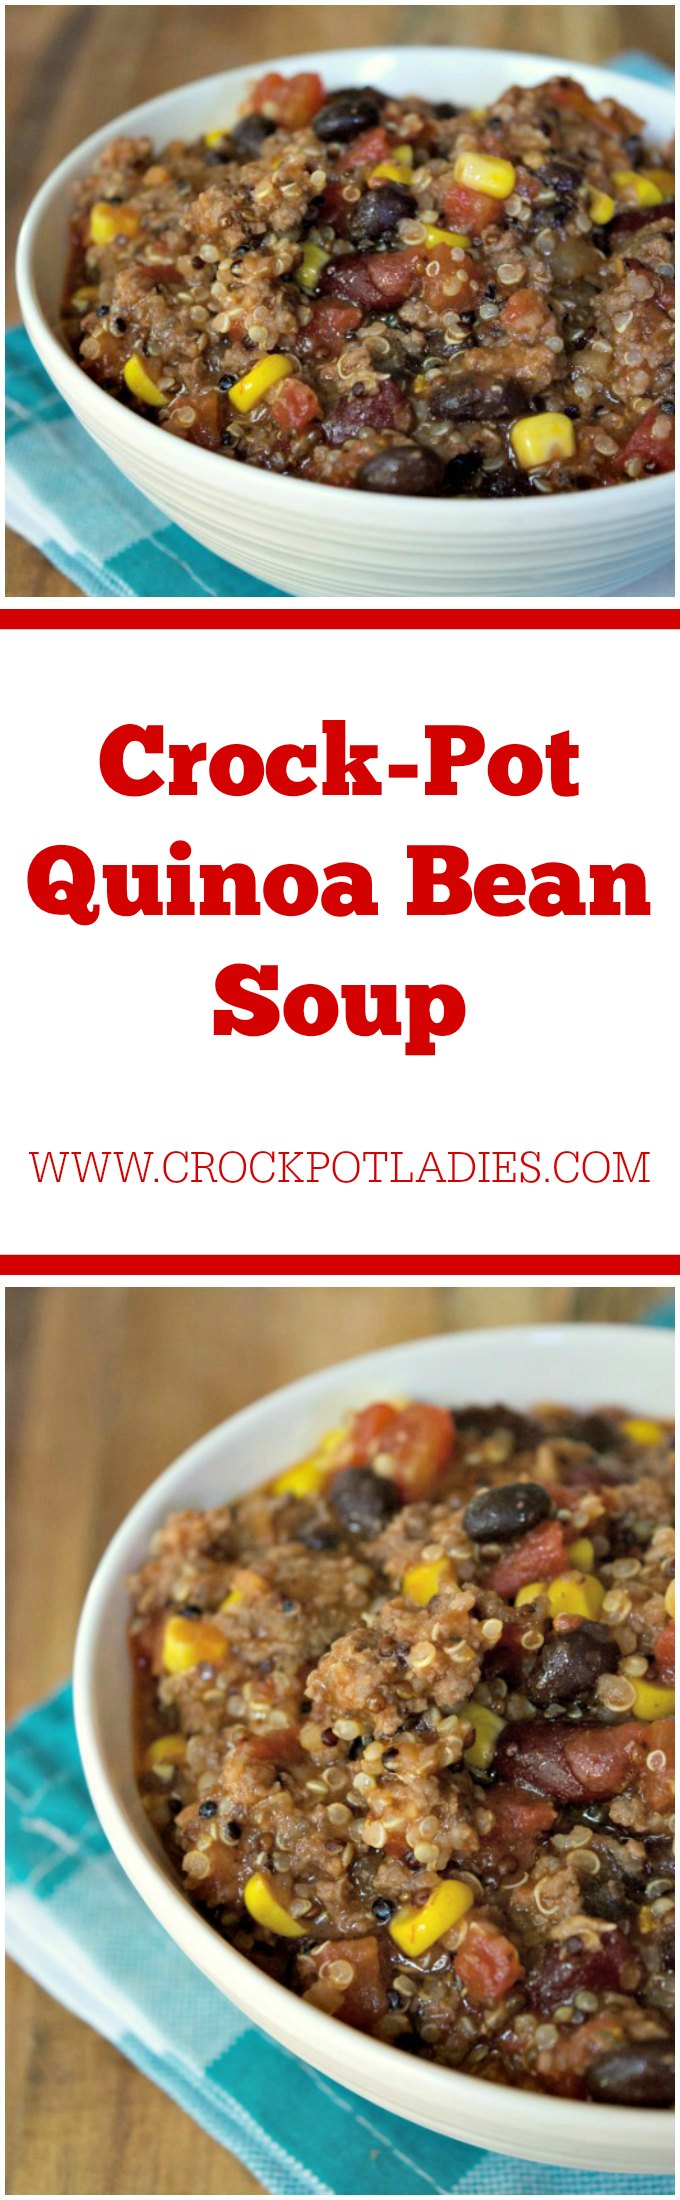 Crock-Pot Quinoa Bean Soup